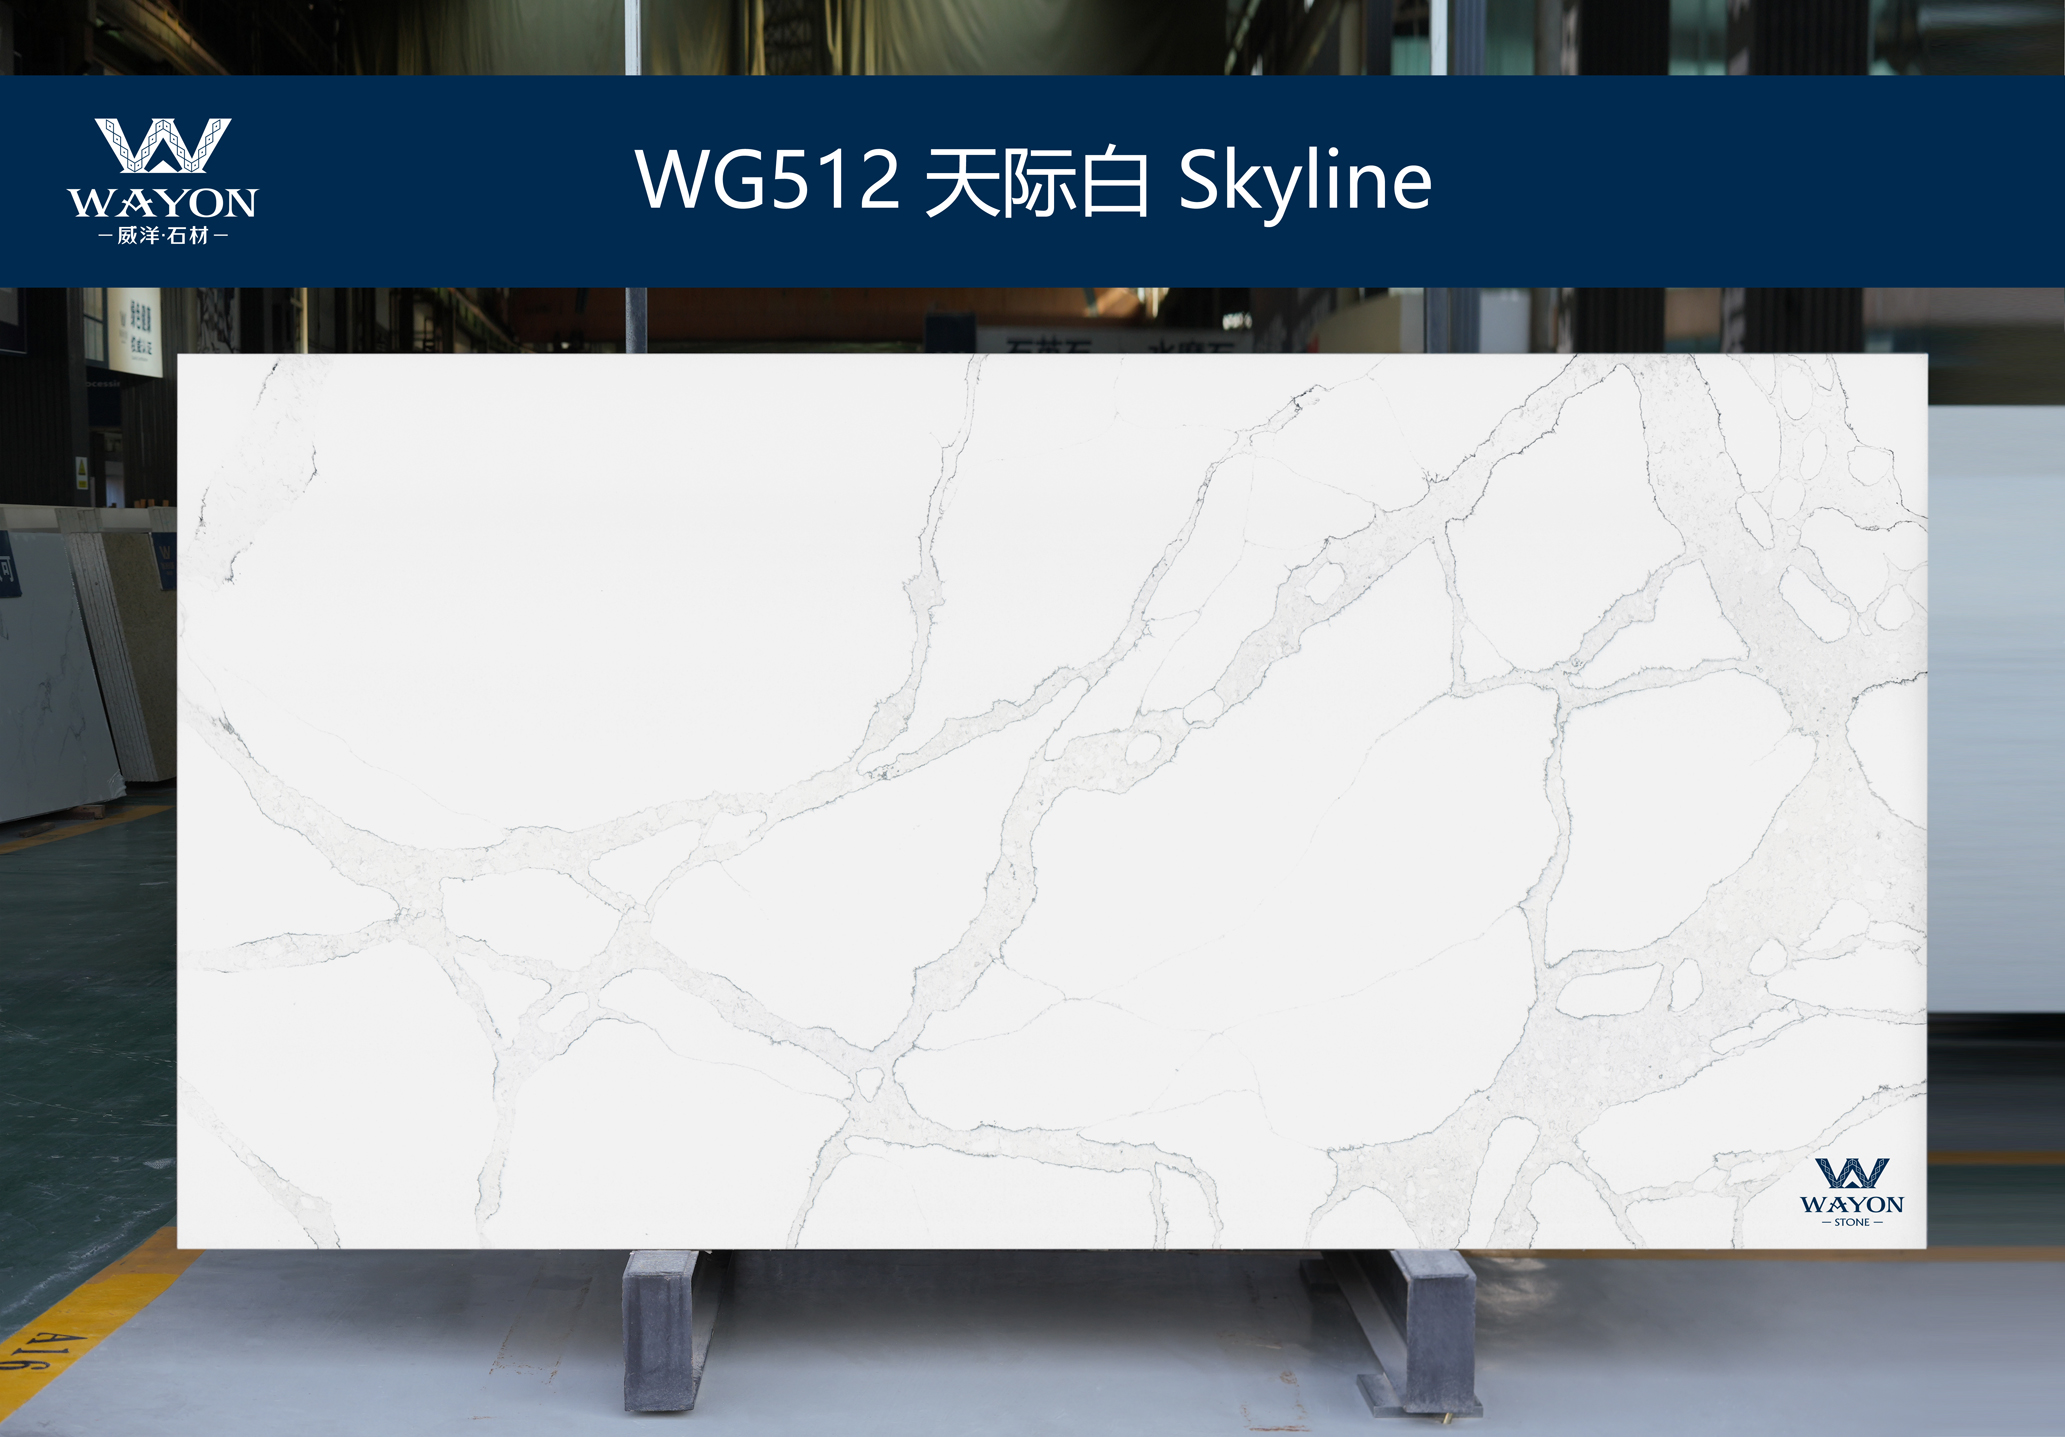 WG512 Skyline